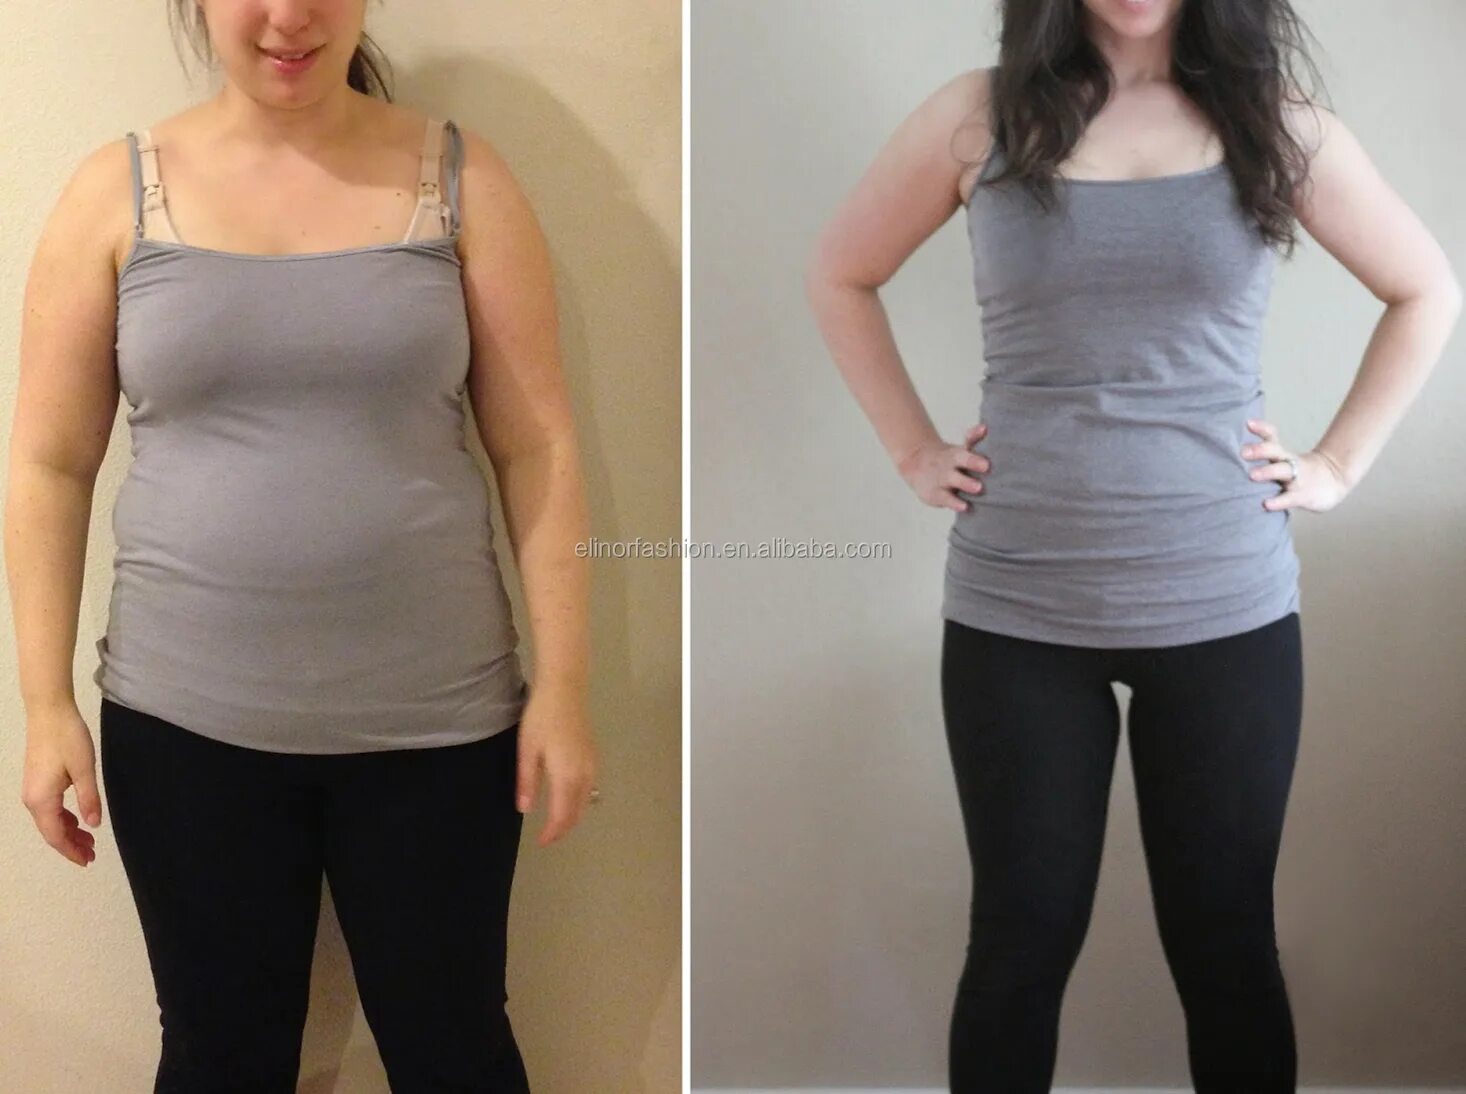 Похудение до и после. Результаты похудения. Бег похудение до и после. Результаты до и после похудения. Можно ли похудеть с помощью бега